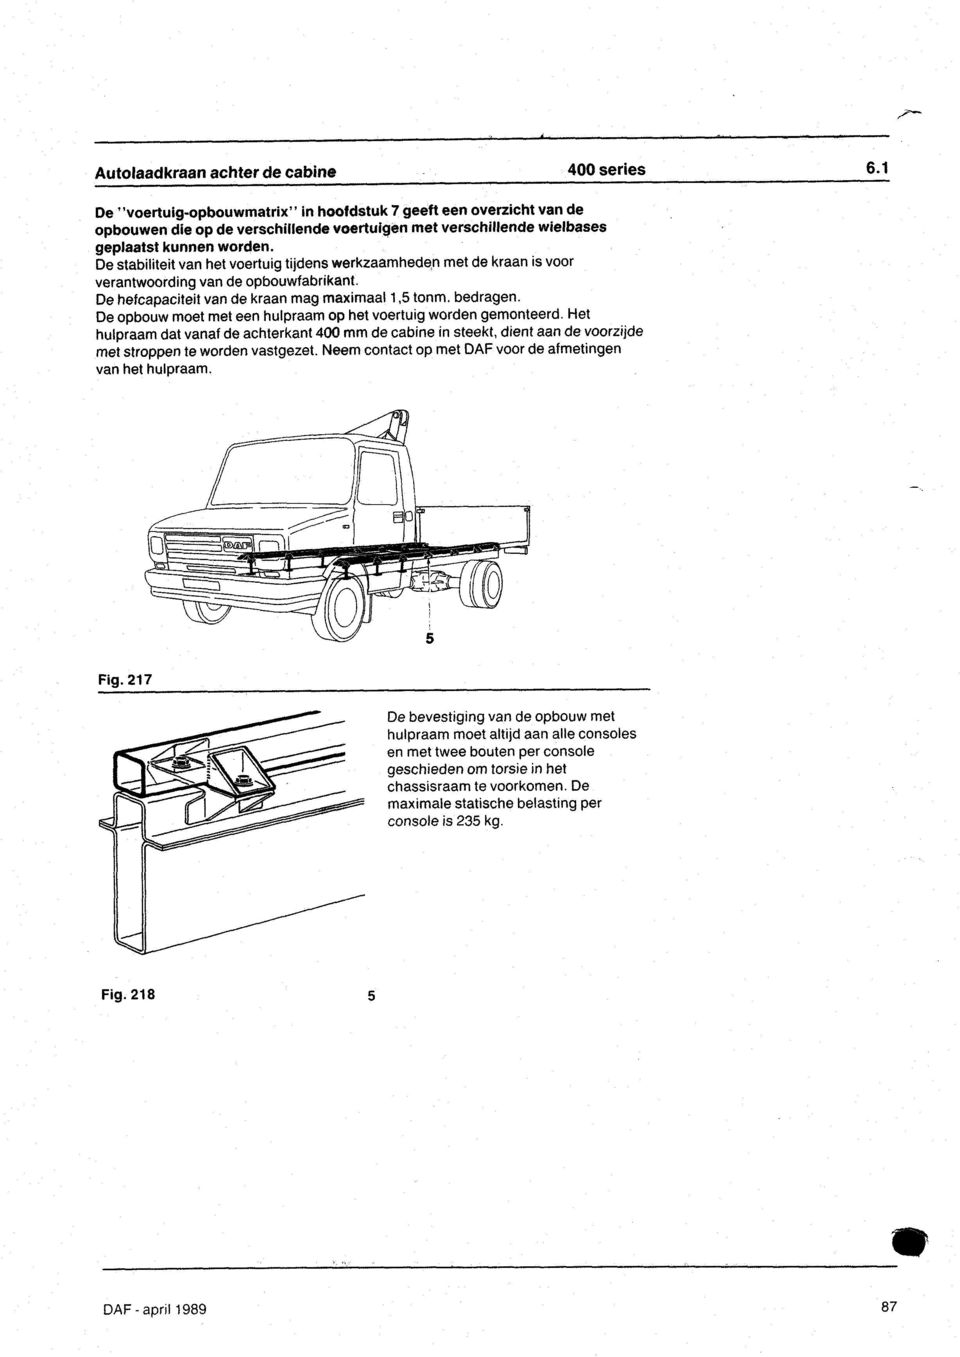 De stabiliteit van het voertuig tiidens werkzaamheden met de kraan is voor verantwoording van de opbouwfabrikant.